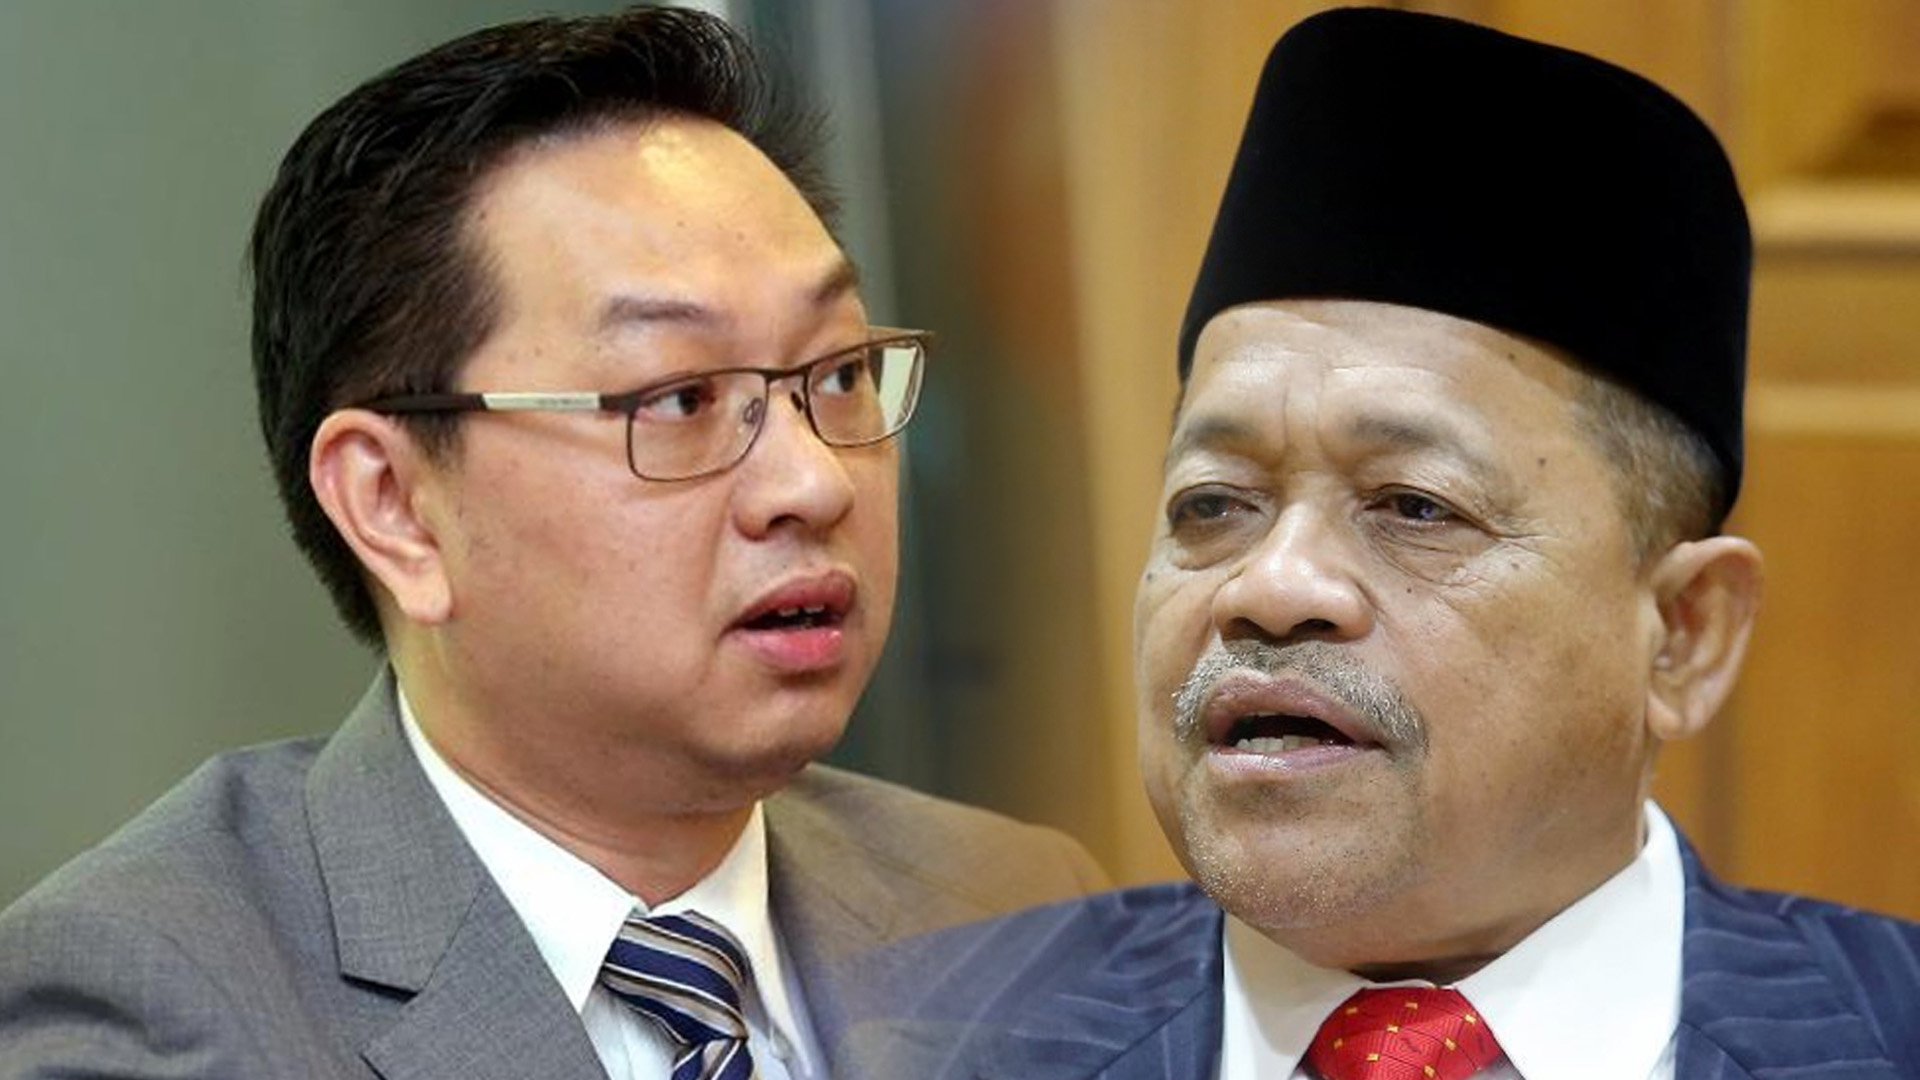 Tarik balik 2.0: Shahidan ignites outrage in Dewan Rakyat, accuses Tebrau MP of supporting Israel